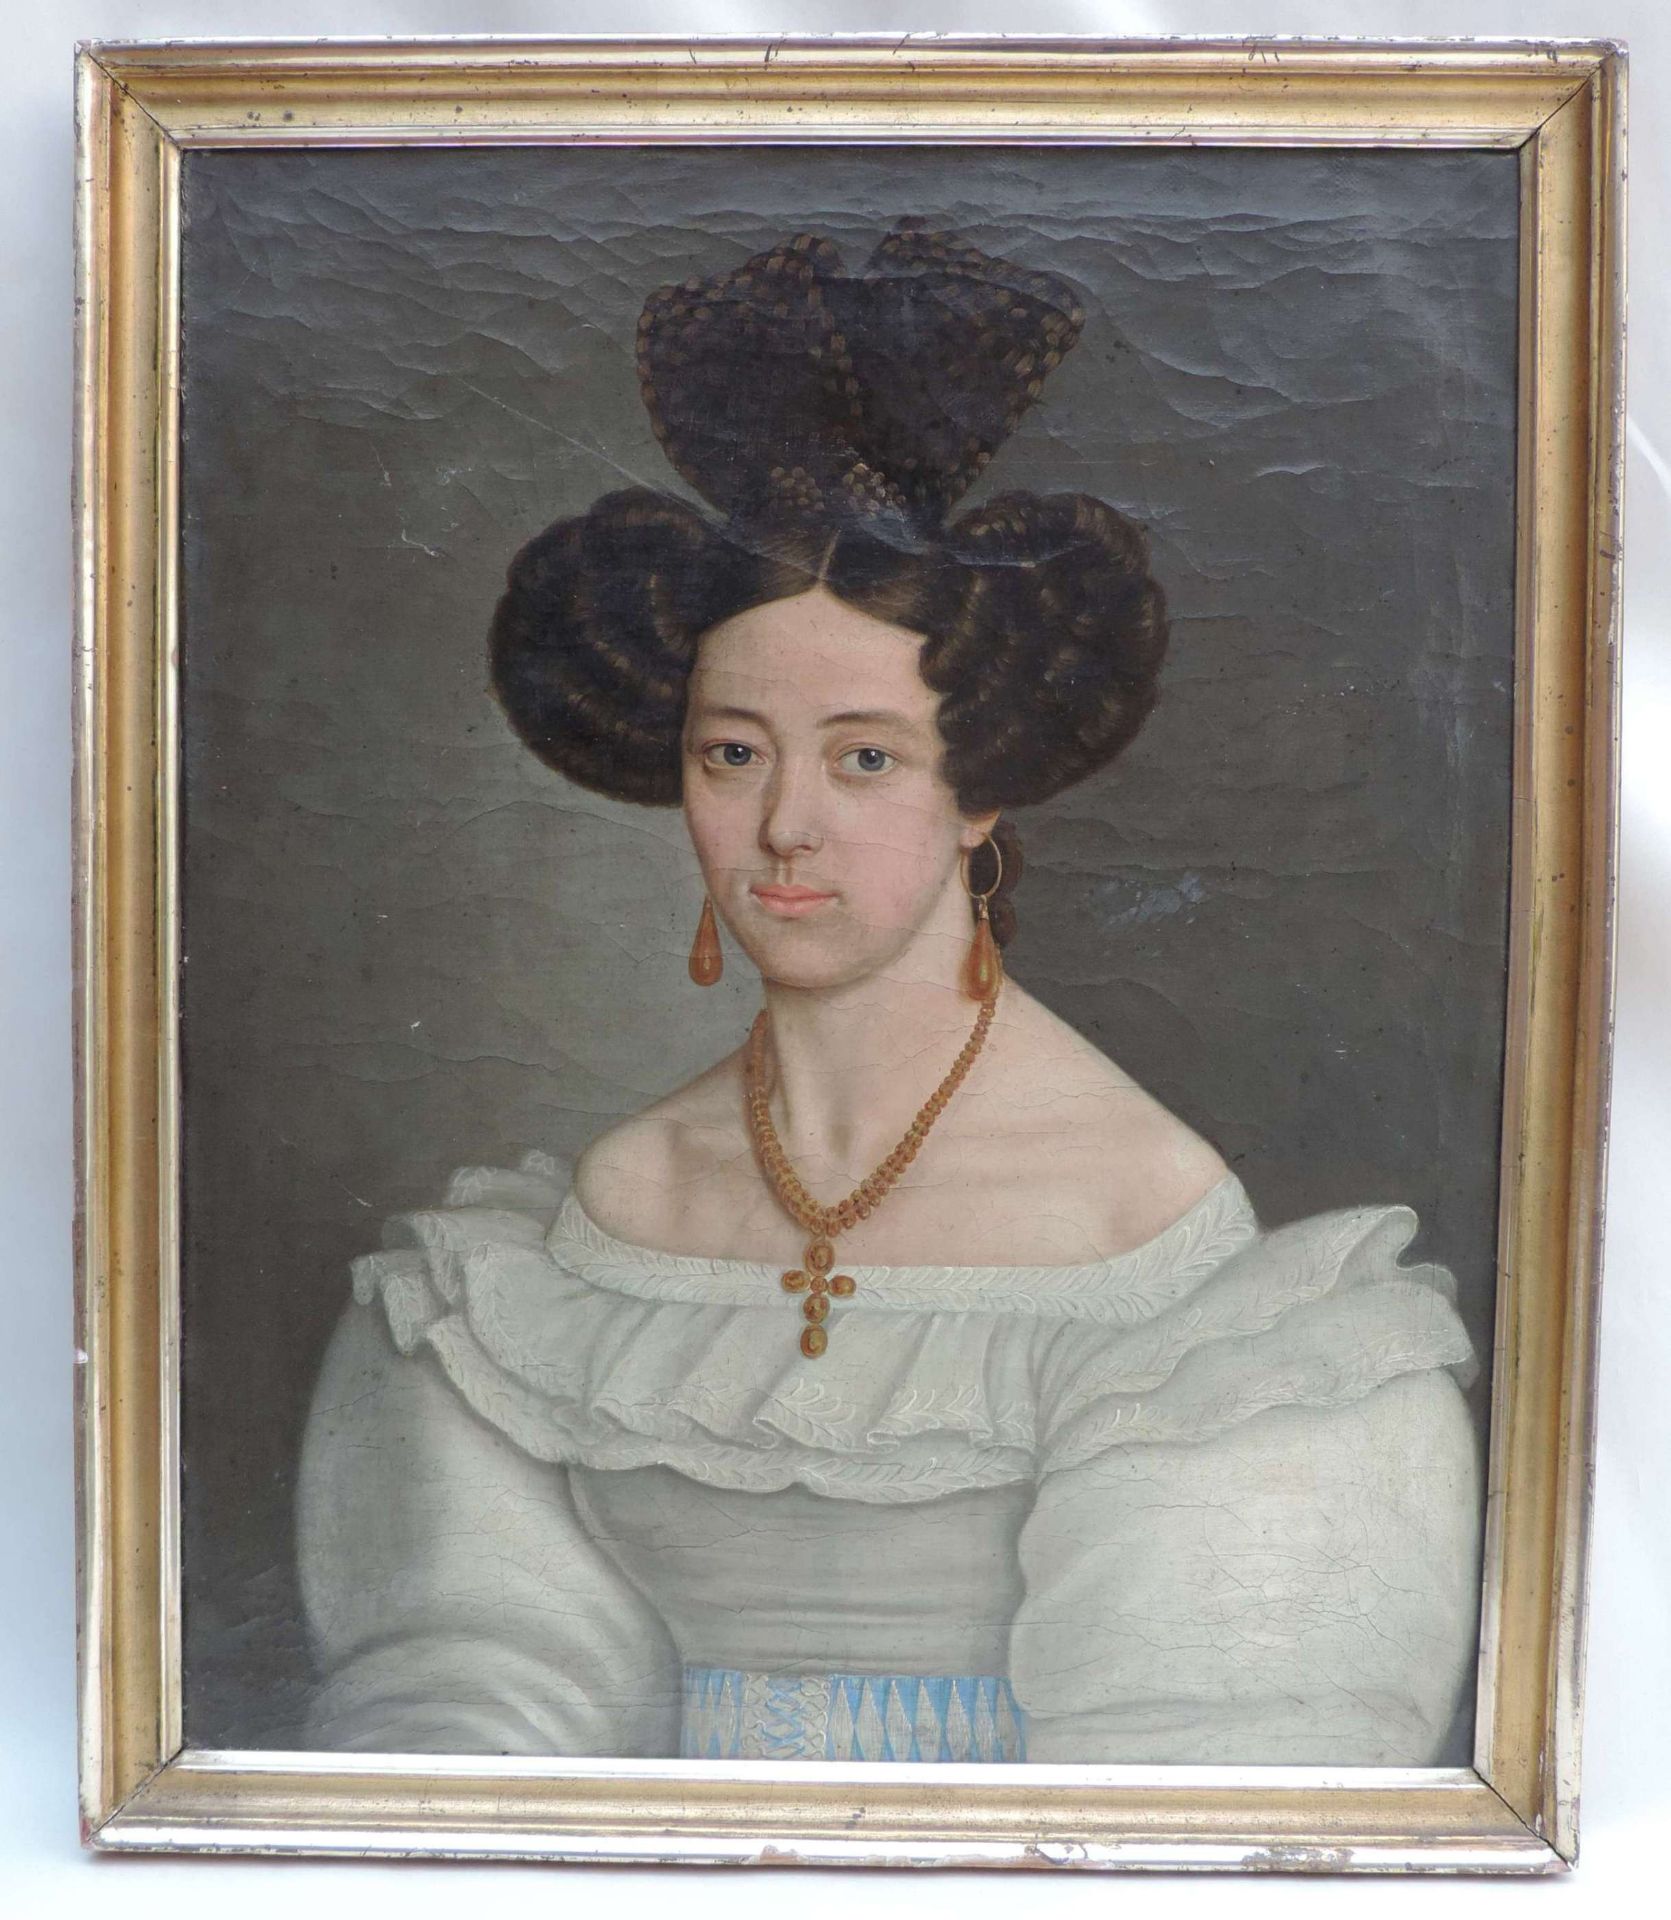 ANONYMUS/MA, Biedermeier-Epoche, Öl/Lw, Portrait einer adeligen Dame, 64,5 x 52,5, GR - Bild 2 aus 2